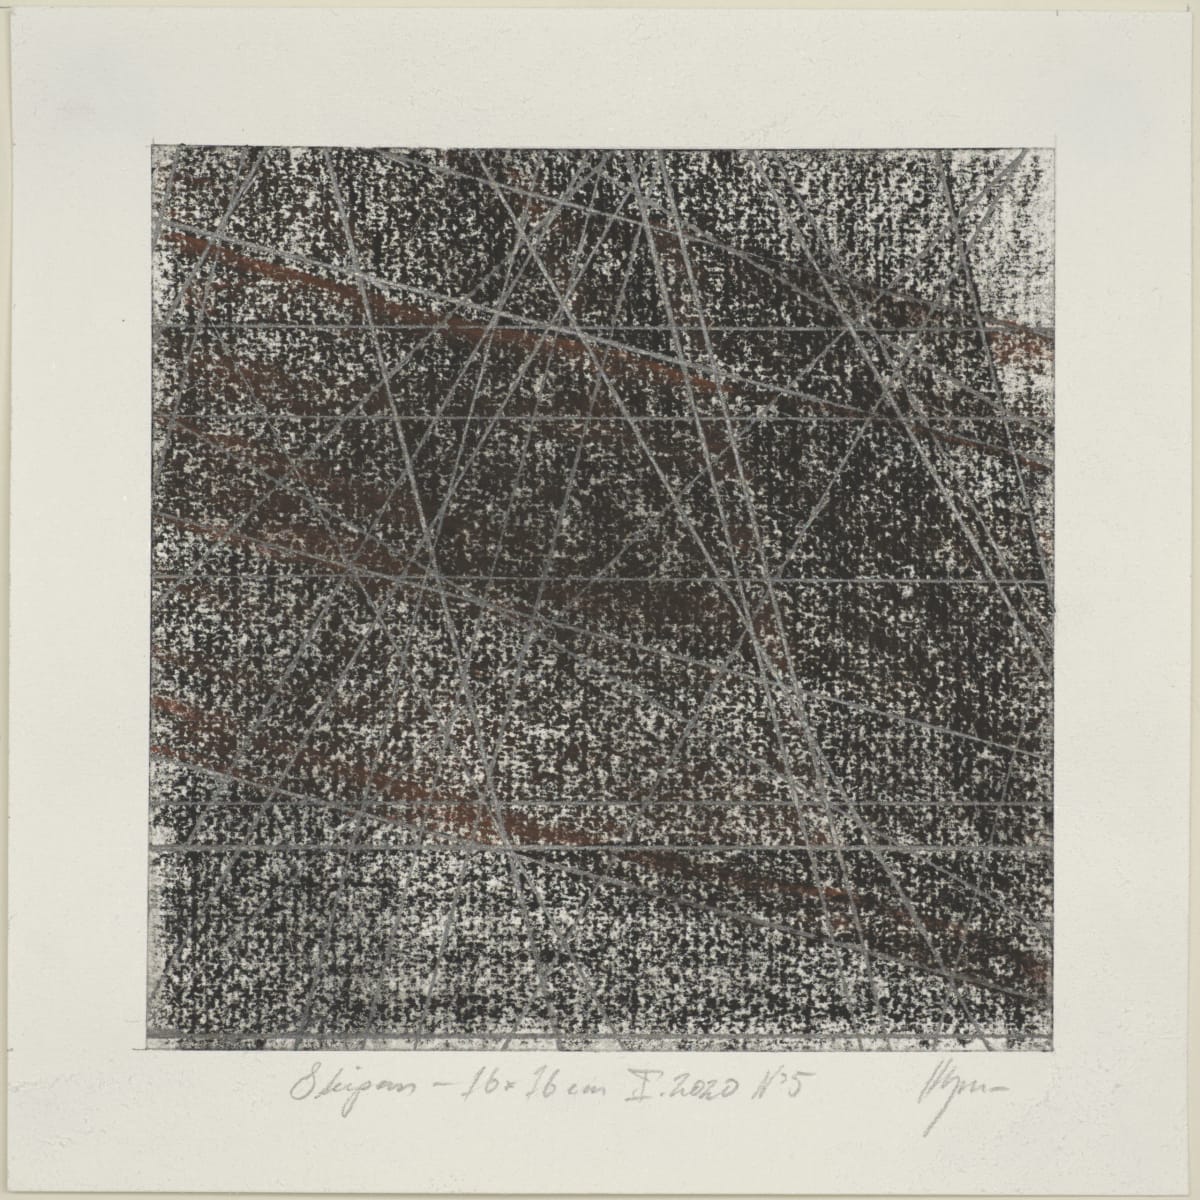 Skipan – viðarkol 16 / 16 x 16 cm, N°5 by Hlynur Helgason 